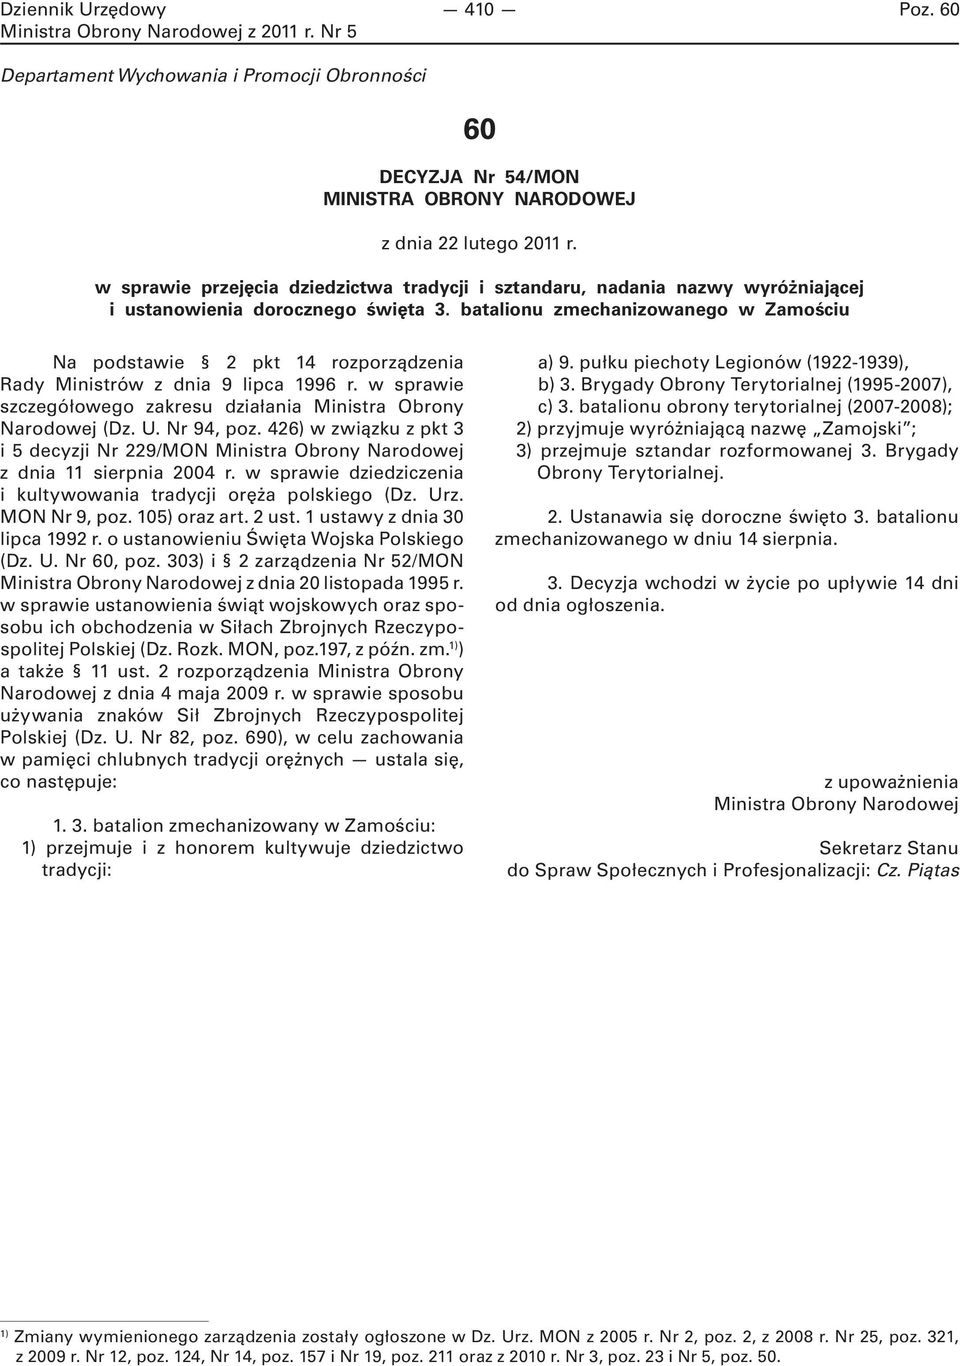 batalionu zmechanizowanego w Zamościu Na podstawie 2 pkt 14 rozporządzenia Rady Ministrów z dnia 9 lipca 1996 r. w sprawie szczegółowego zakresu działania Ministra Obrony Narodowej (Dz. U. Nr 94, poz.